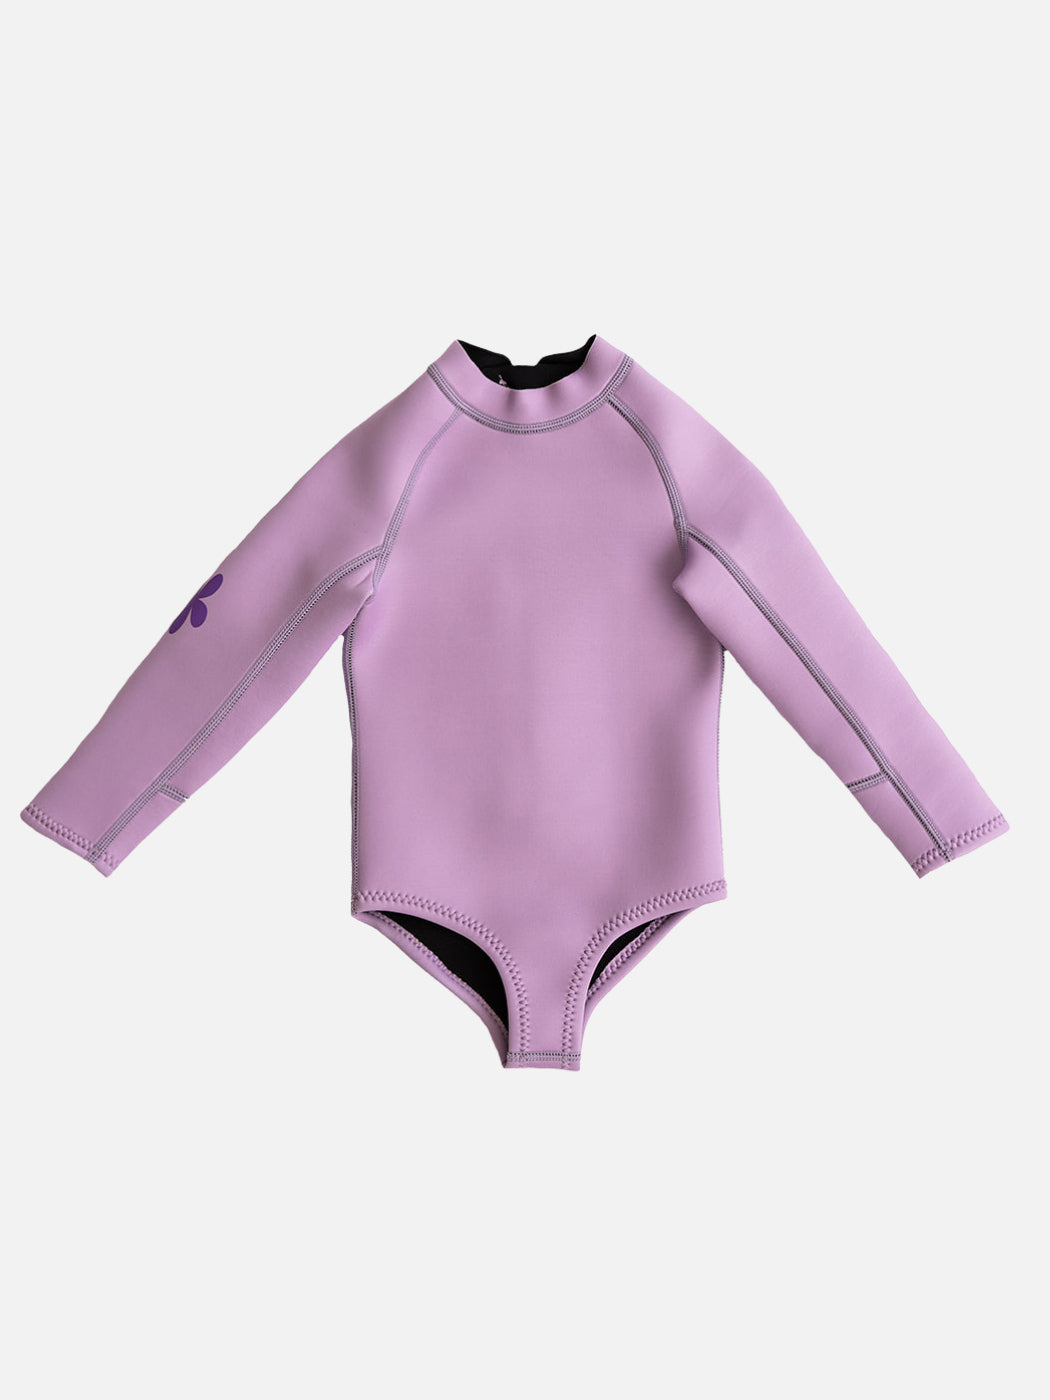 Paddle Suit Wetsuit - Lilac